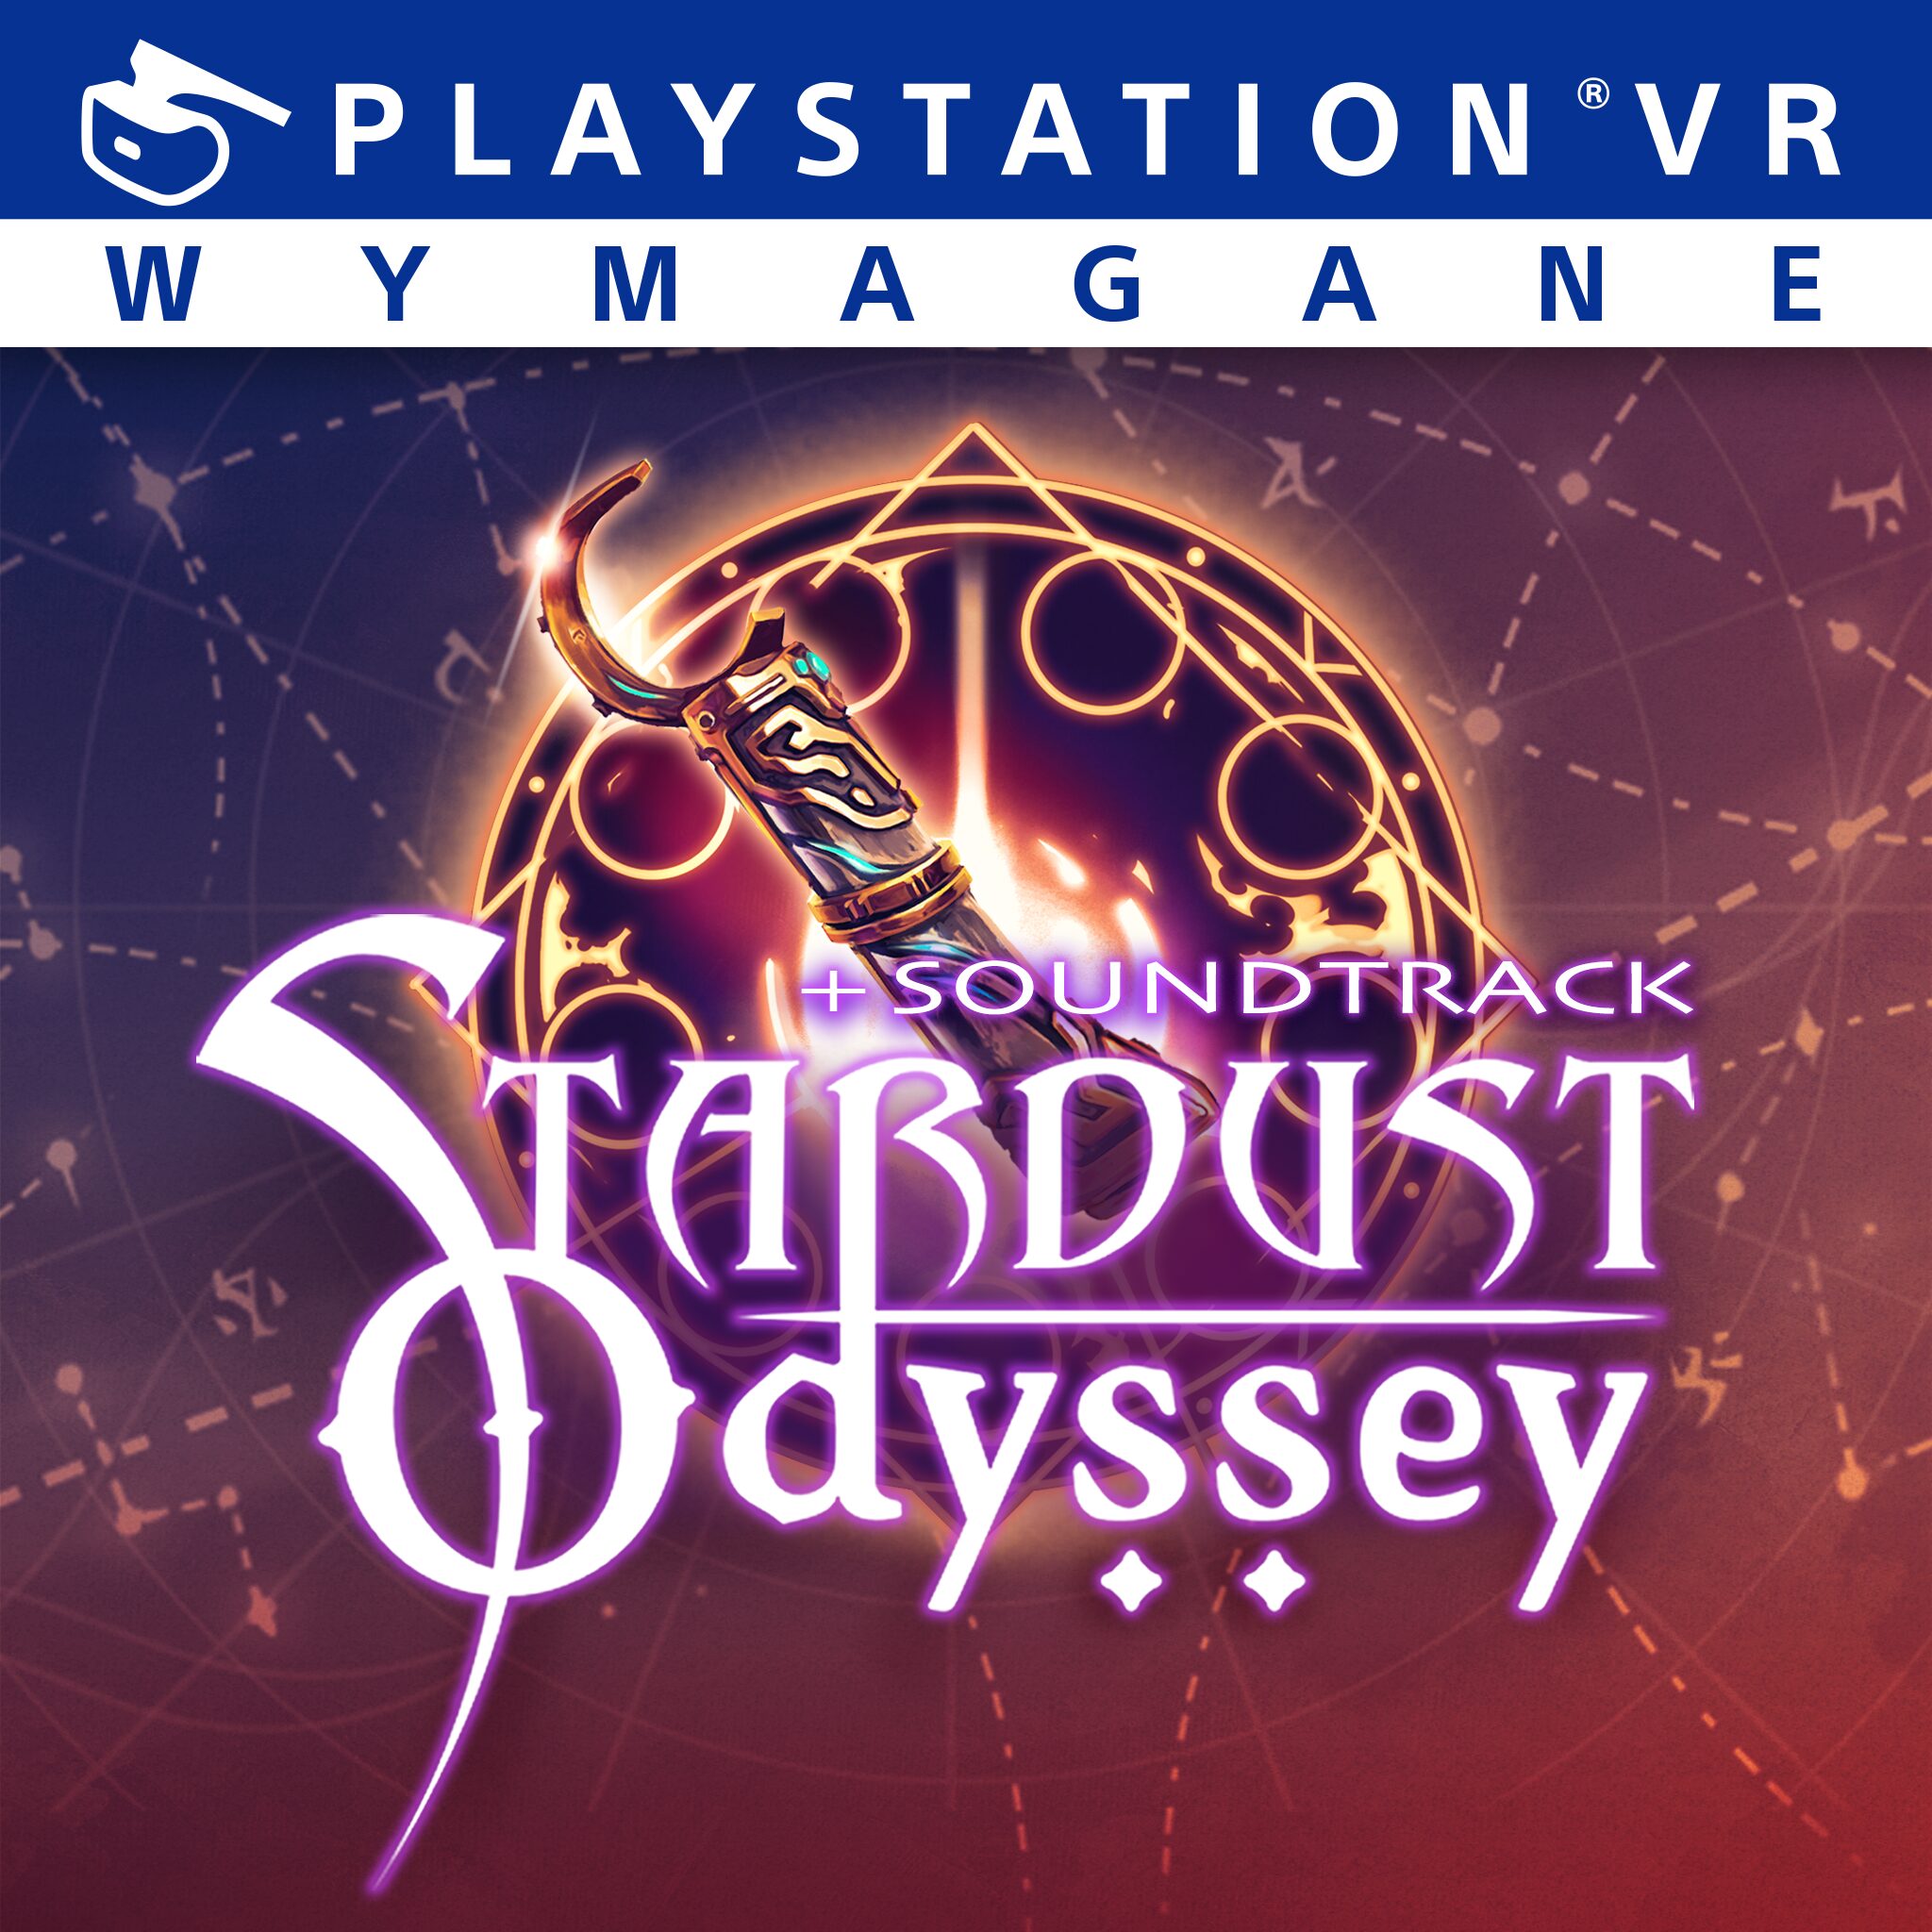 Stardust Odyssey + Soundtrack